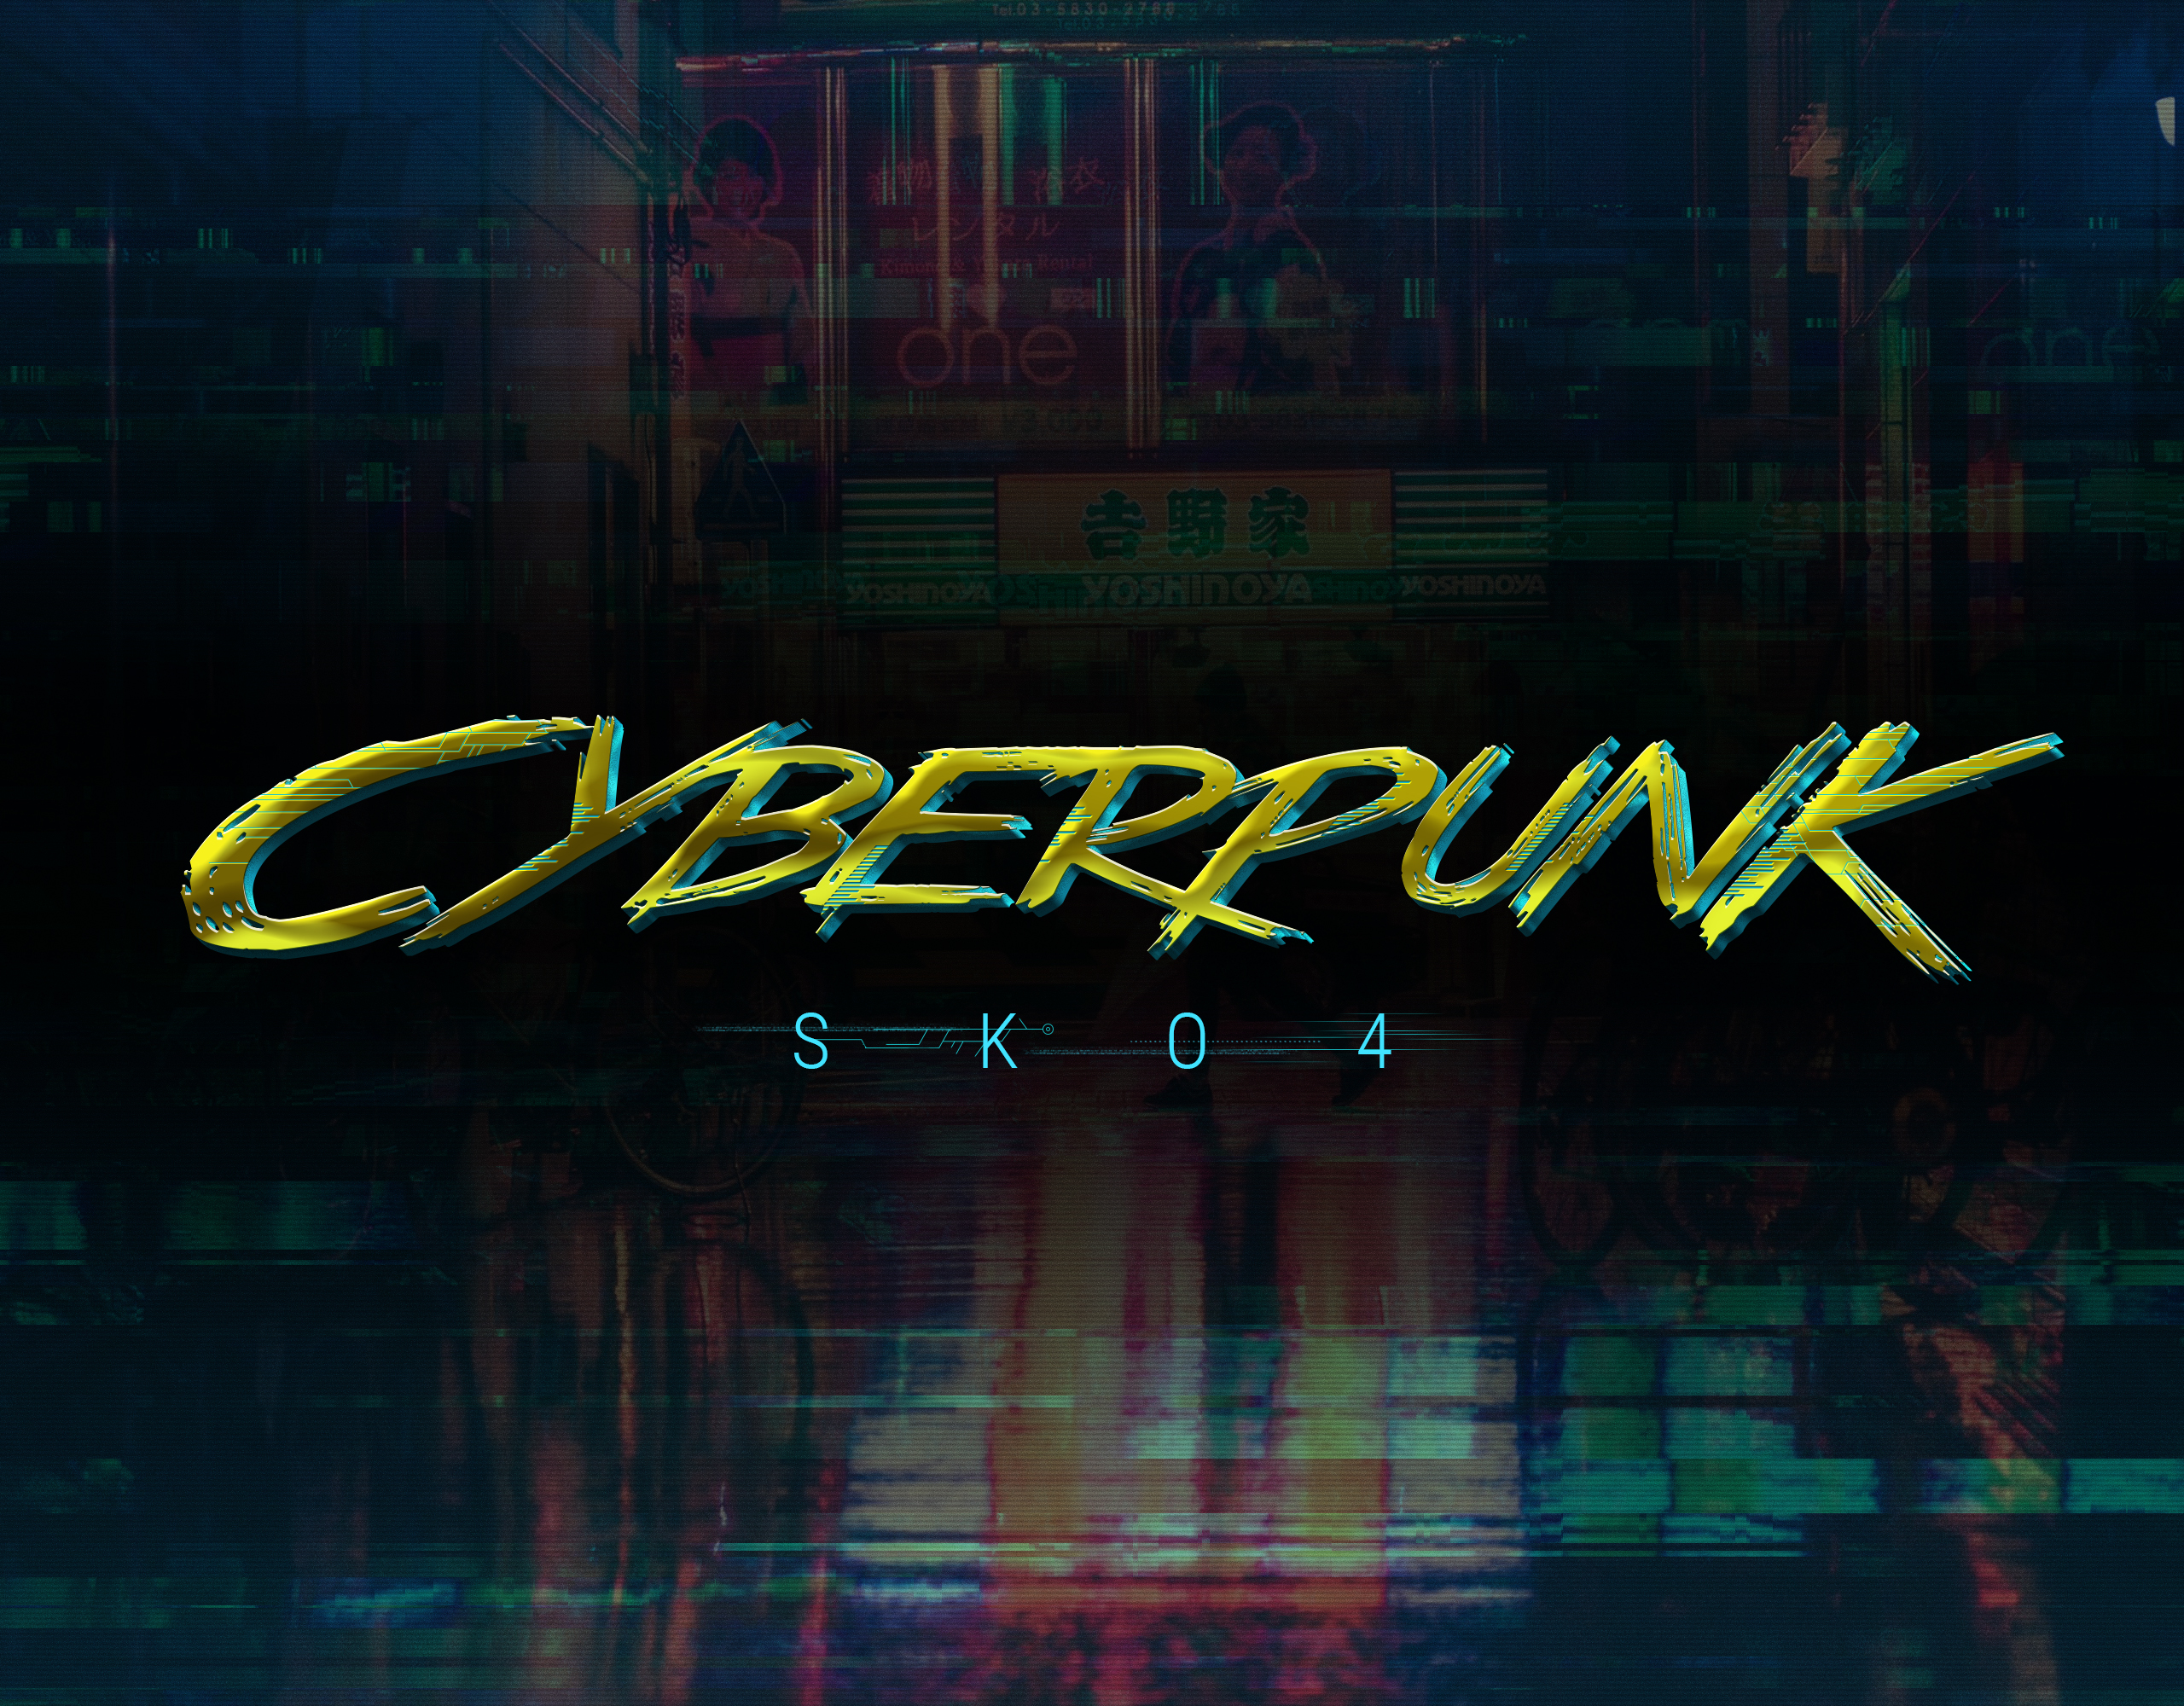 Cyberpunk text